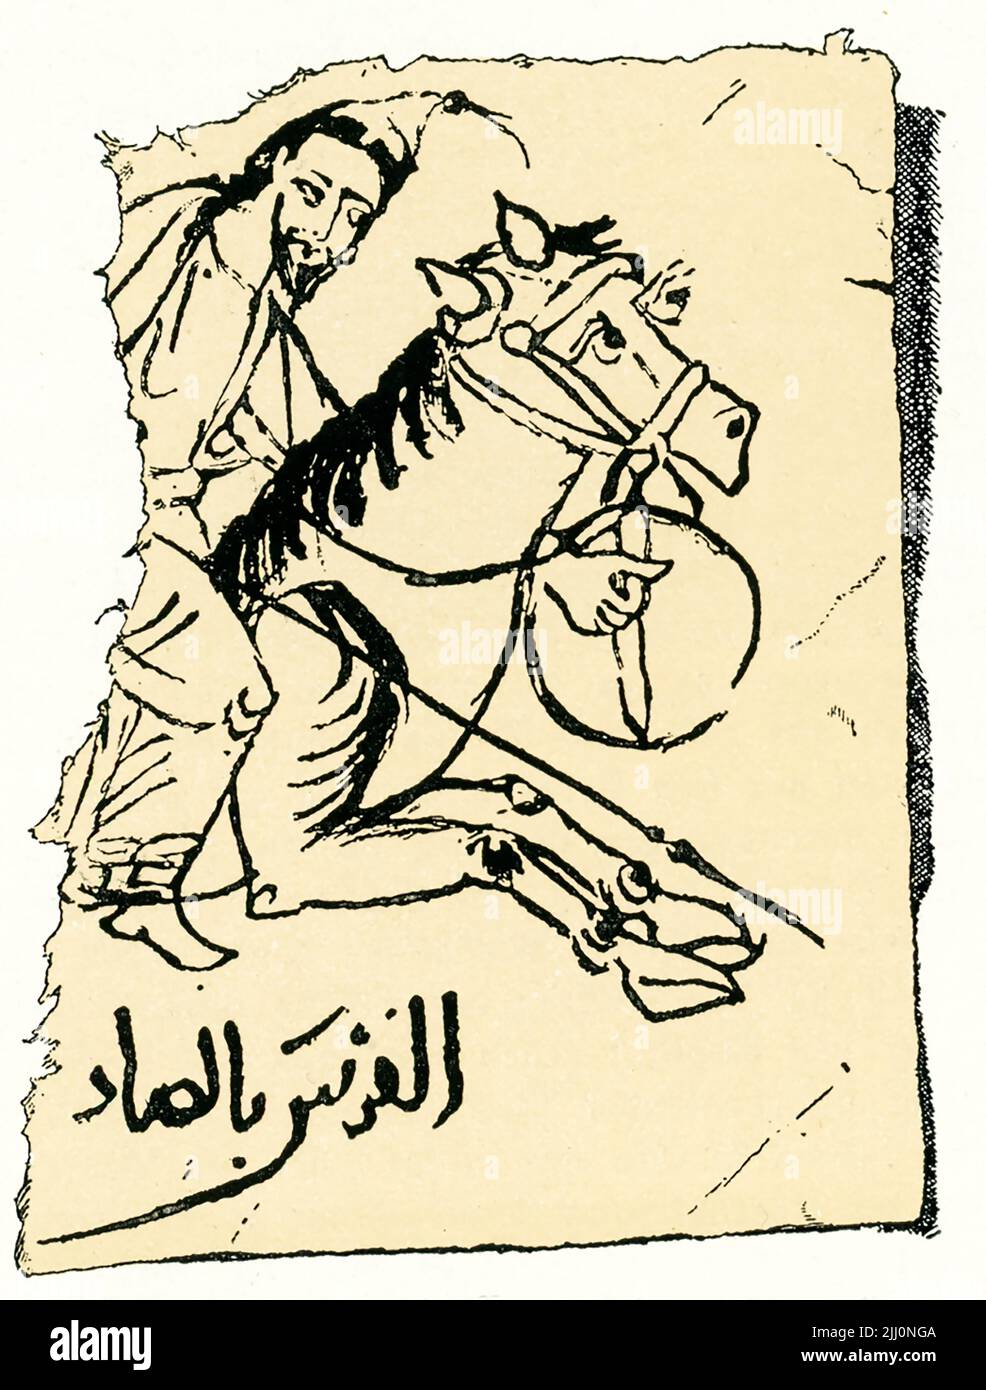 Cette image de 1910 montre un cavalier arabe. Il fait partie d'un papyrus arabe du 10th siècle. Elle fait partie de la collection de l’Archduke Rainer à Vienne, en Autriche. Banque D'Images